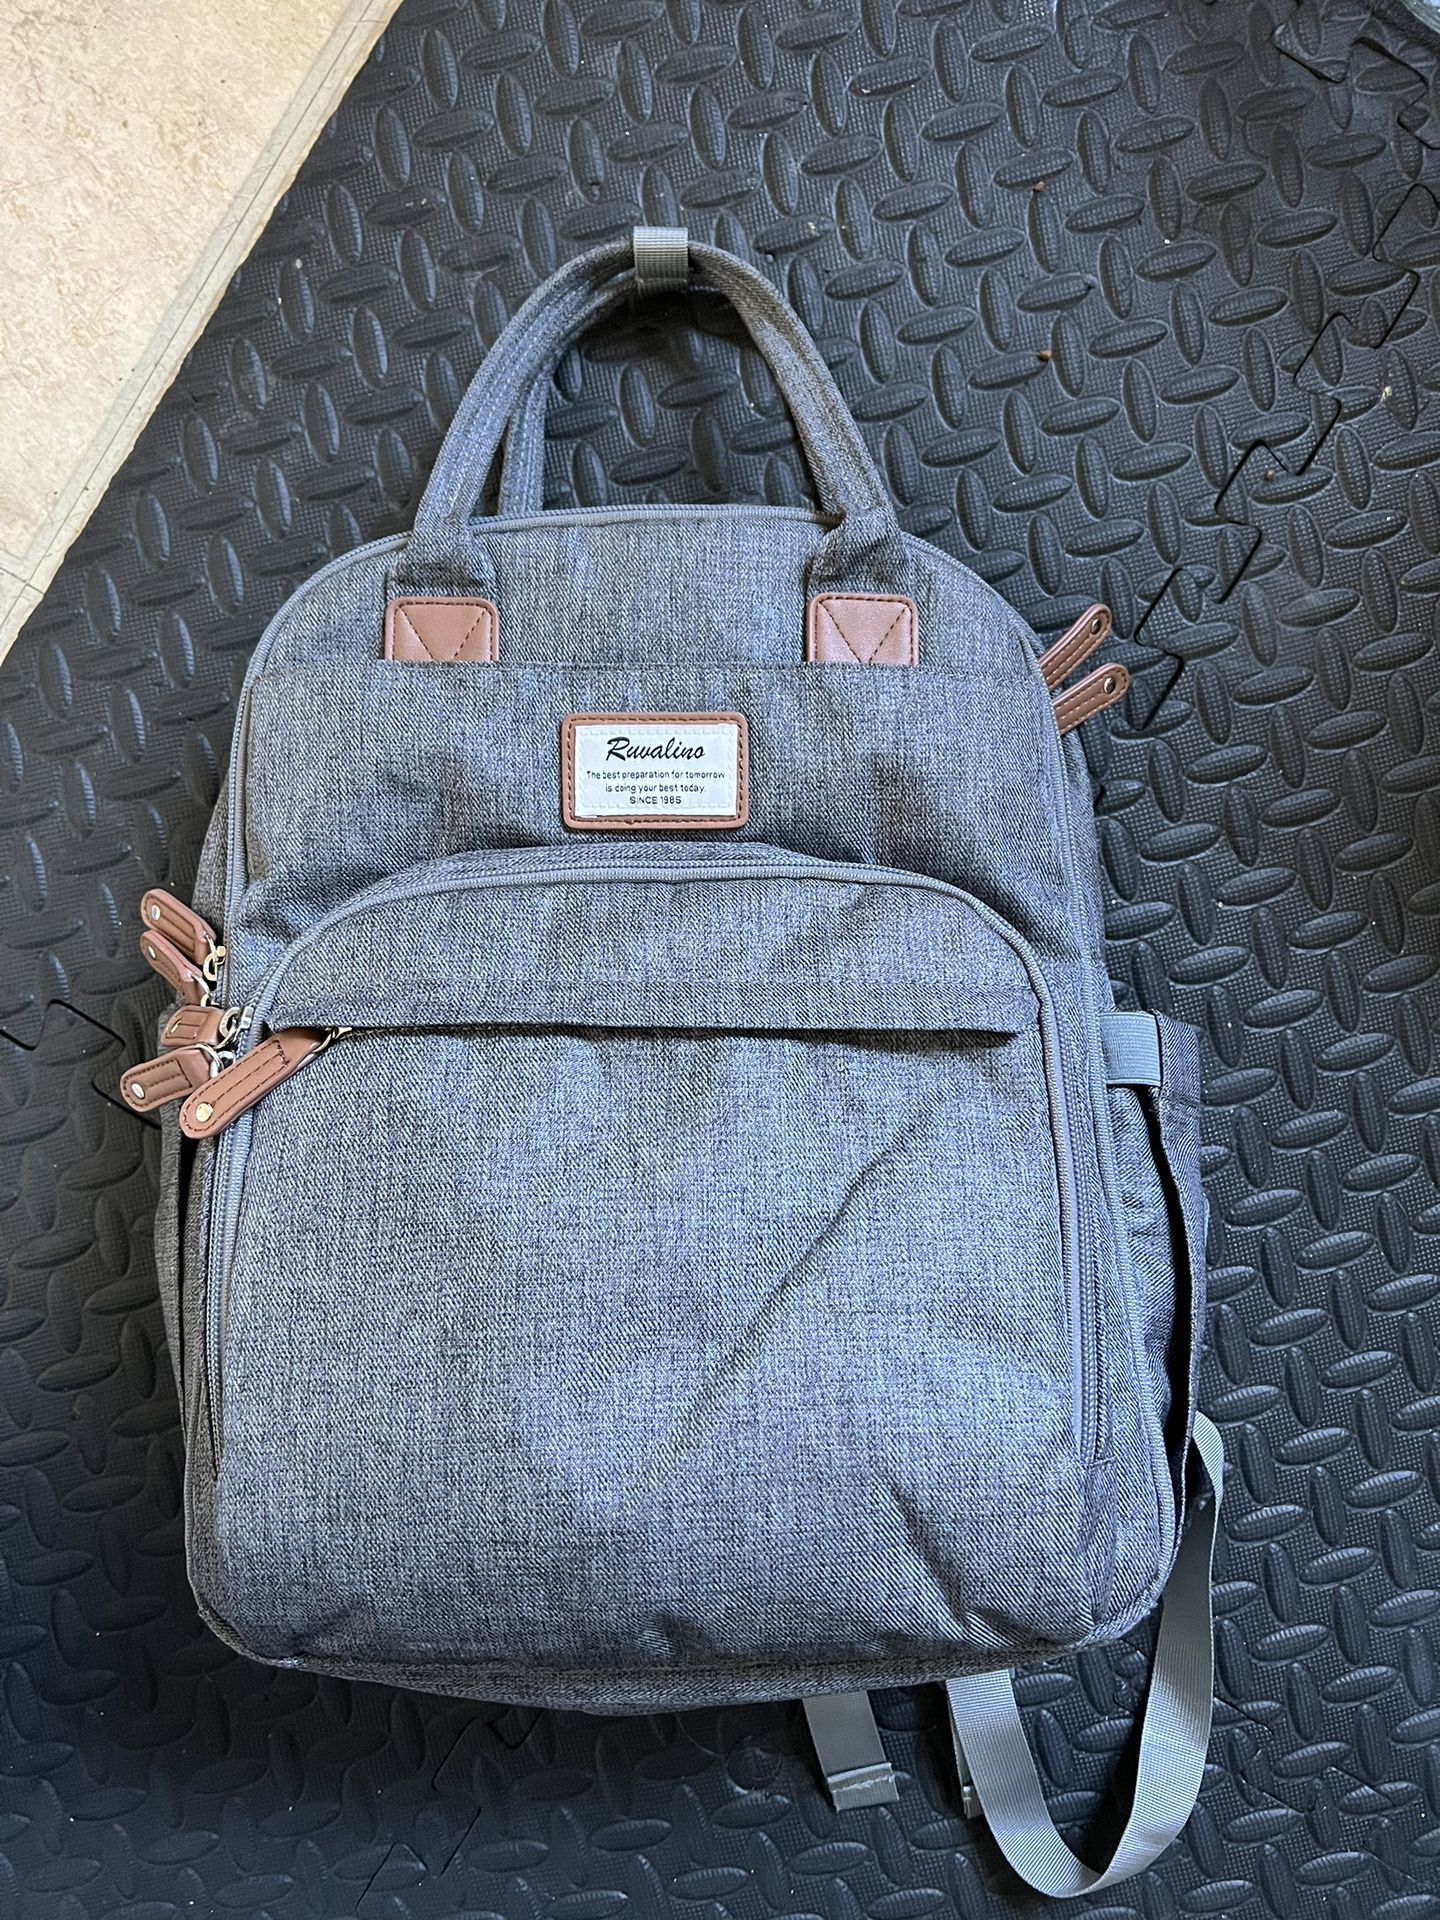 Ruvalino Diaper Backpack Bag